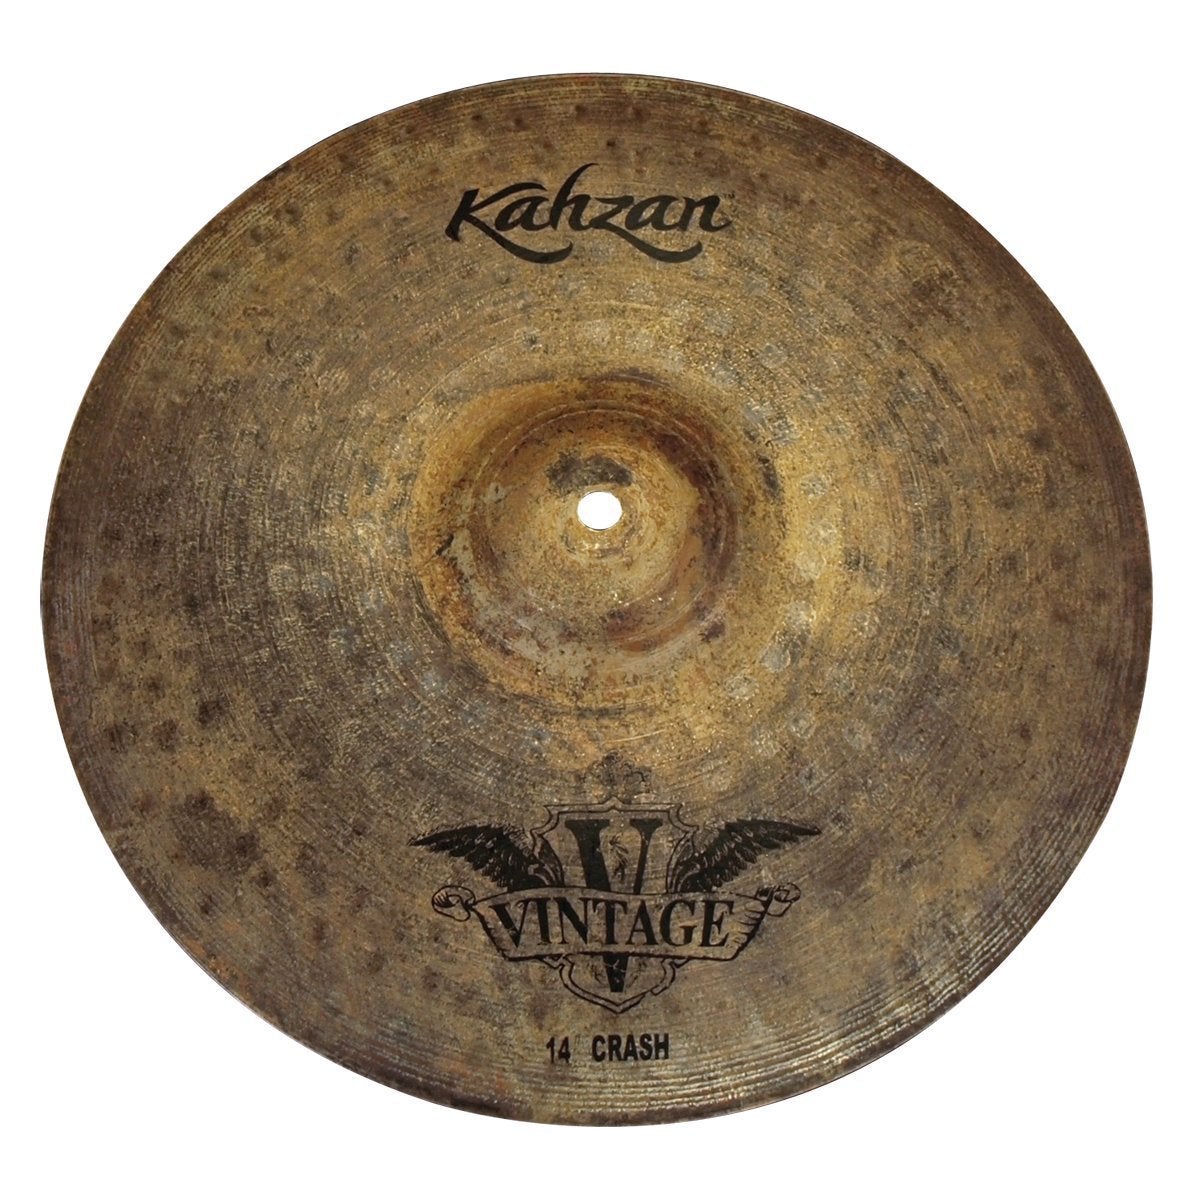 Kahzan 'Vintage Series' Crash Cymbal (14")-KC-VIN-14C